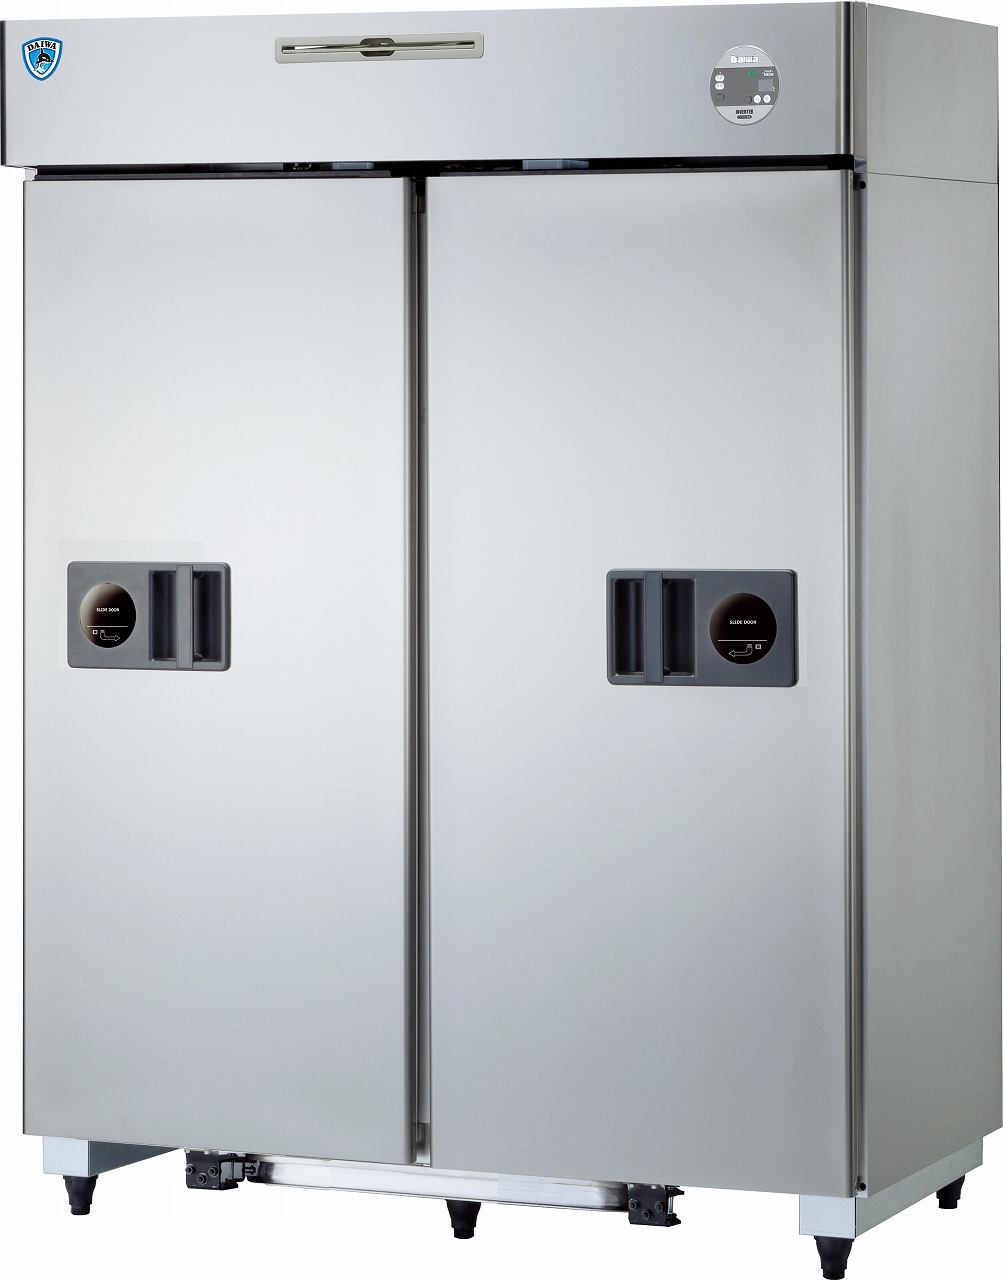 インバータ制御スライド扉冷凍冷蔵庫 エコ蔵くん | 厨房用冷凍・冷蔵庫